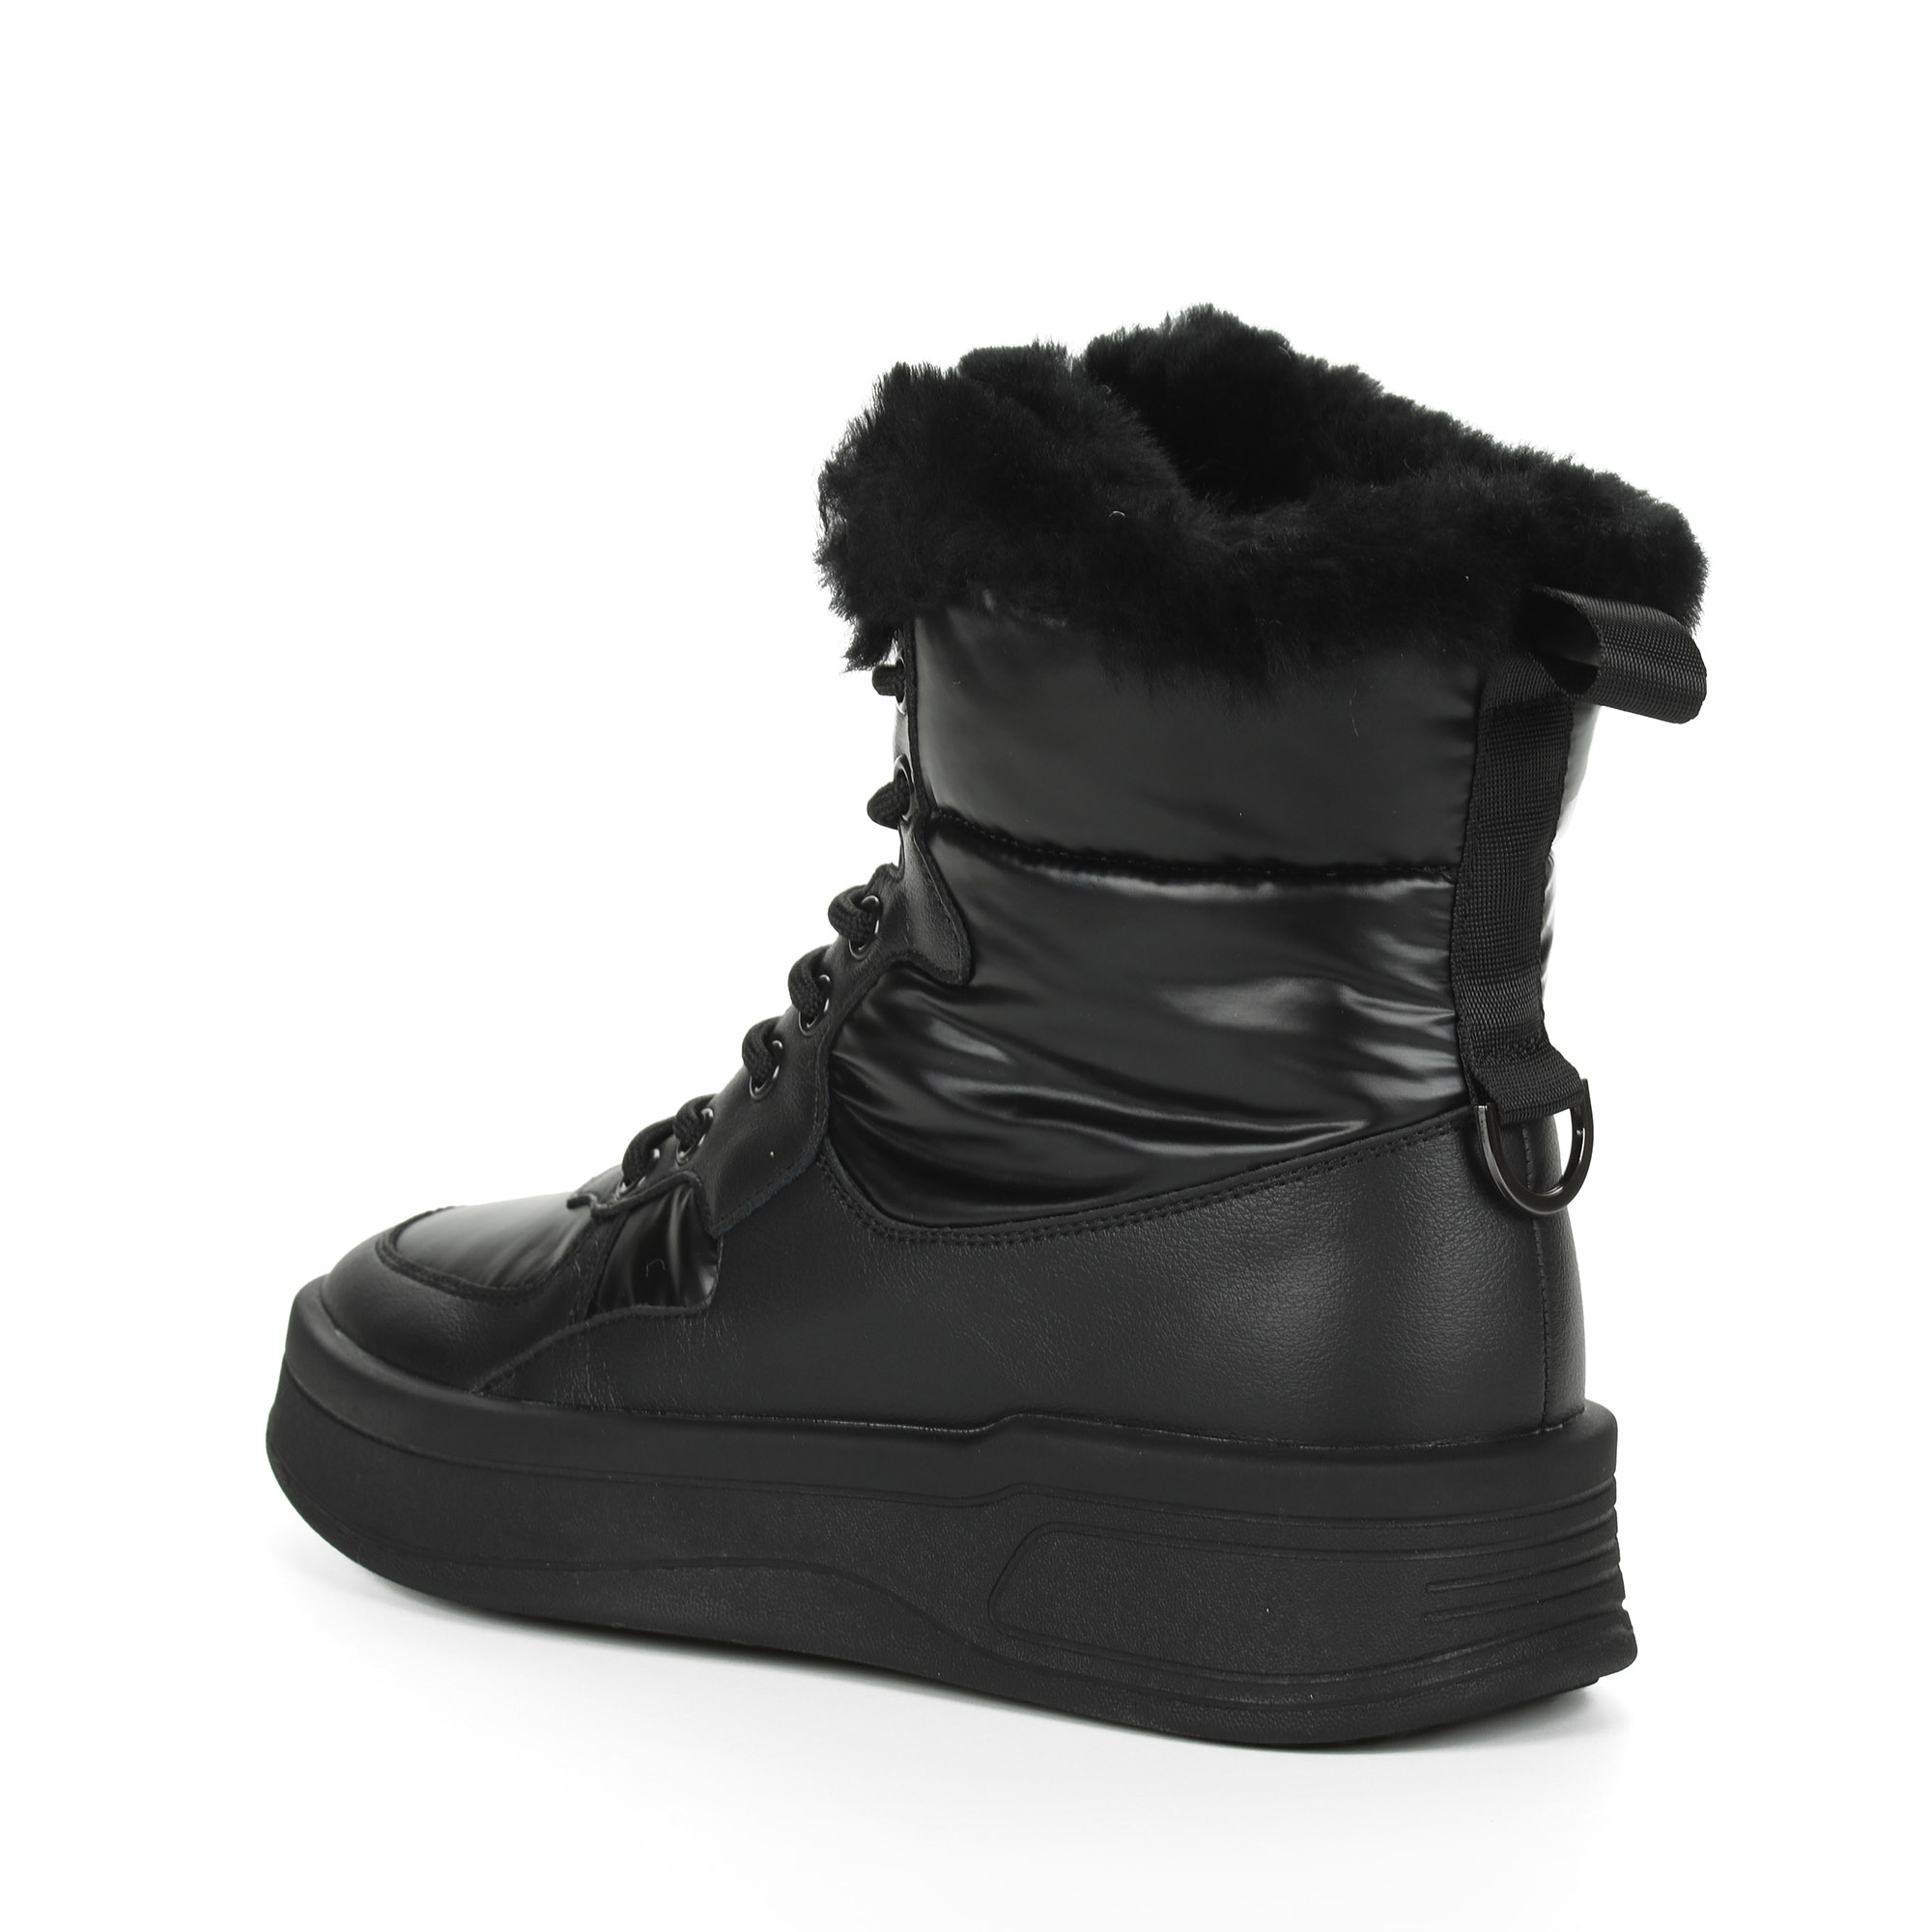 Черные высокие кроссовки из комбинированных материалов смеховой опушкой на подкладке из натуральной шерсти на утолщенной платформе Respect, размер 39, цвет черный - фото 5